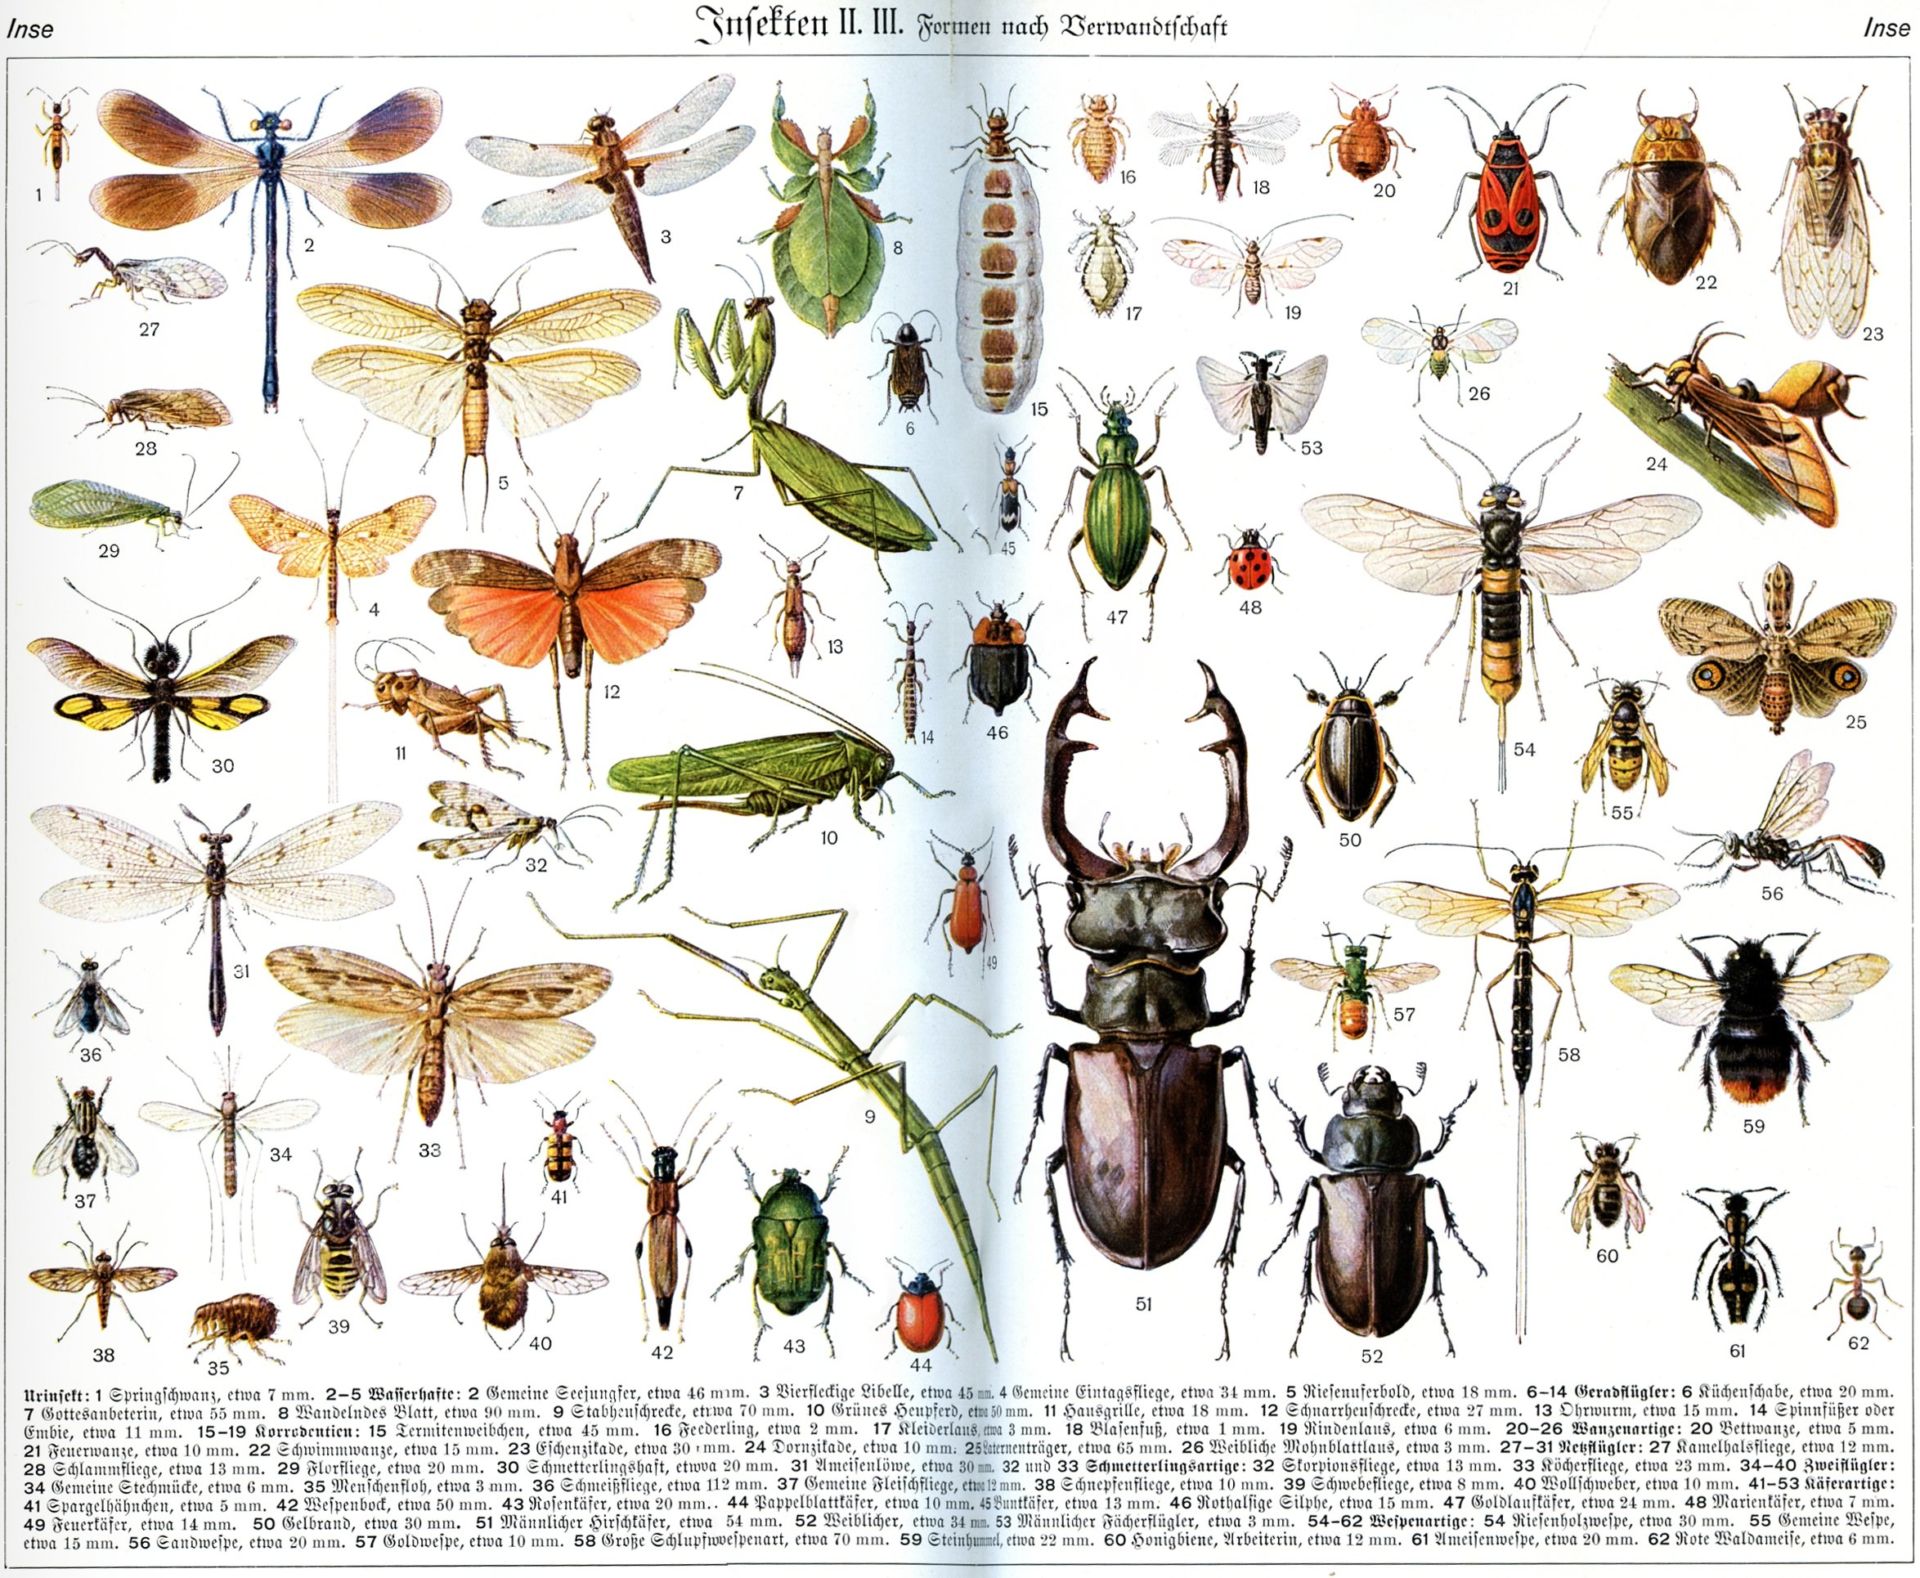 昆虫进化模板图片